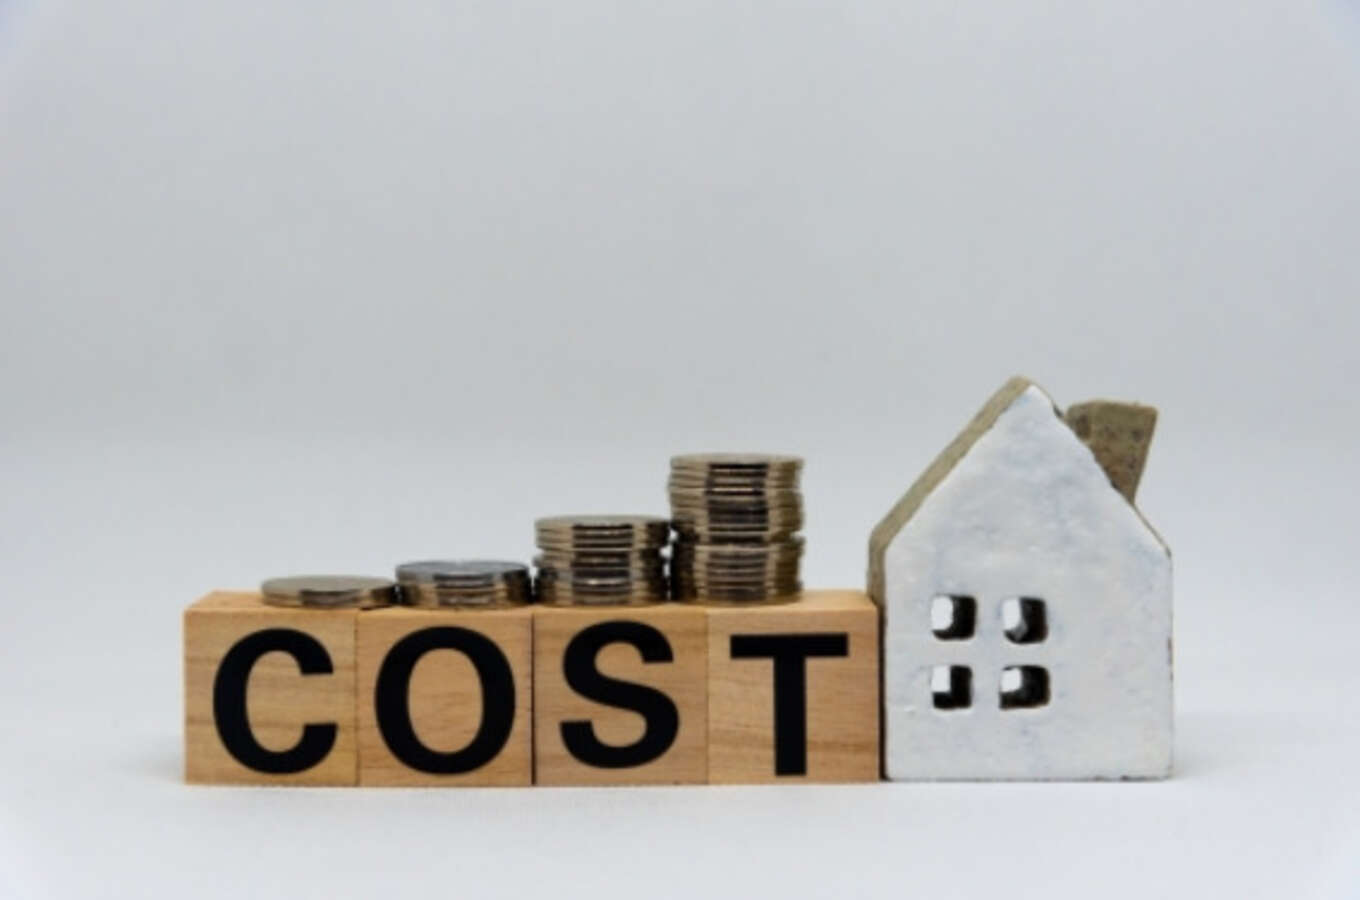 COSTの文字と家の模型の写真